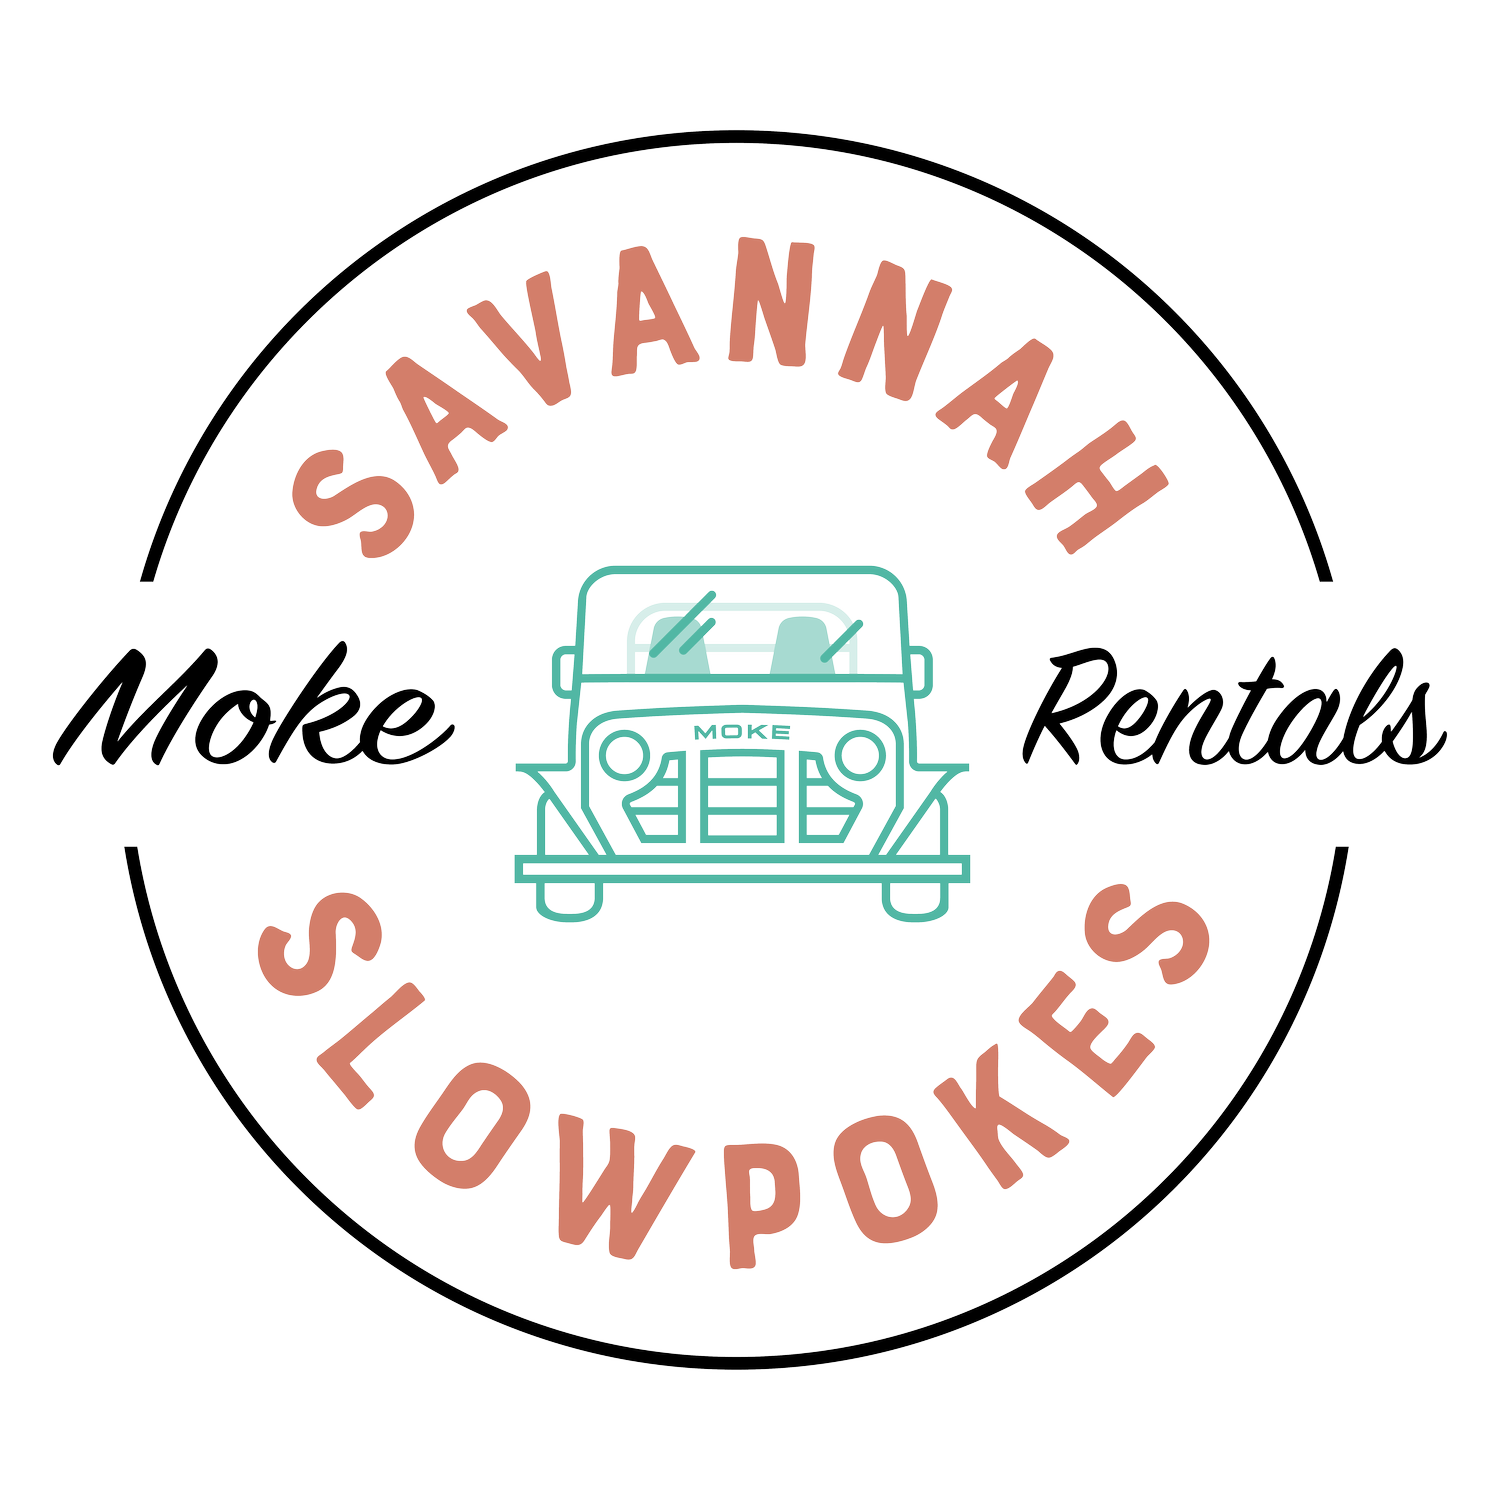 Savannah Slowpokes